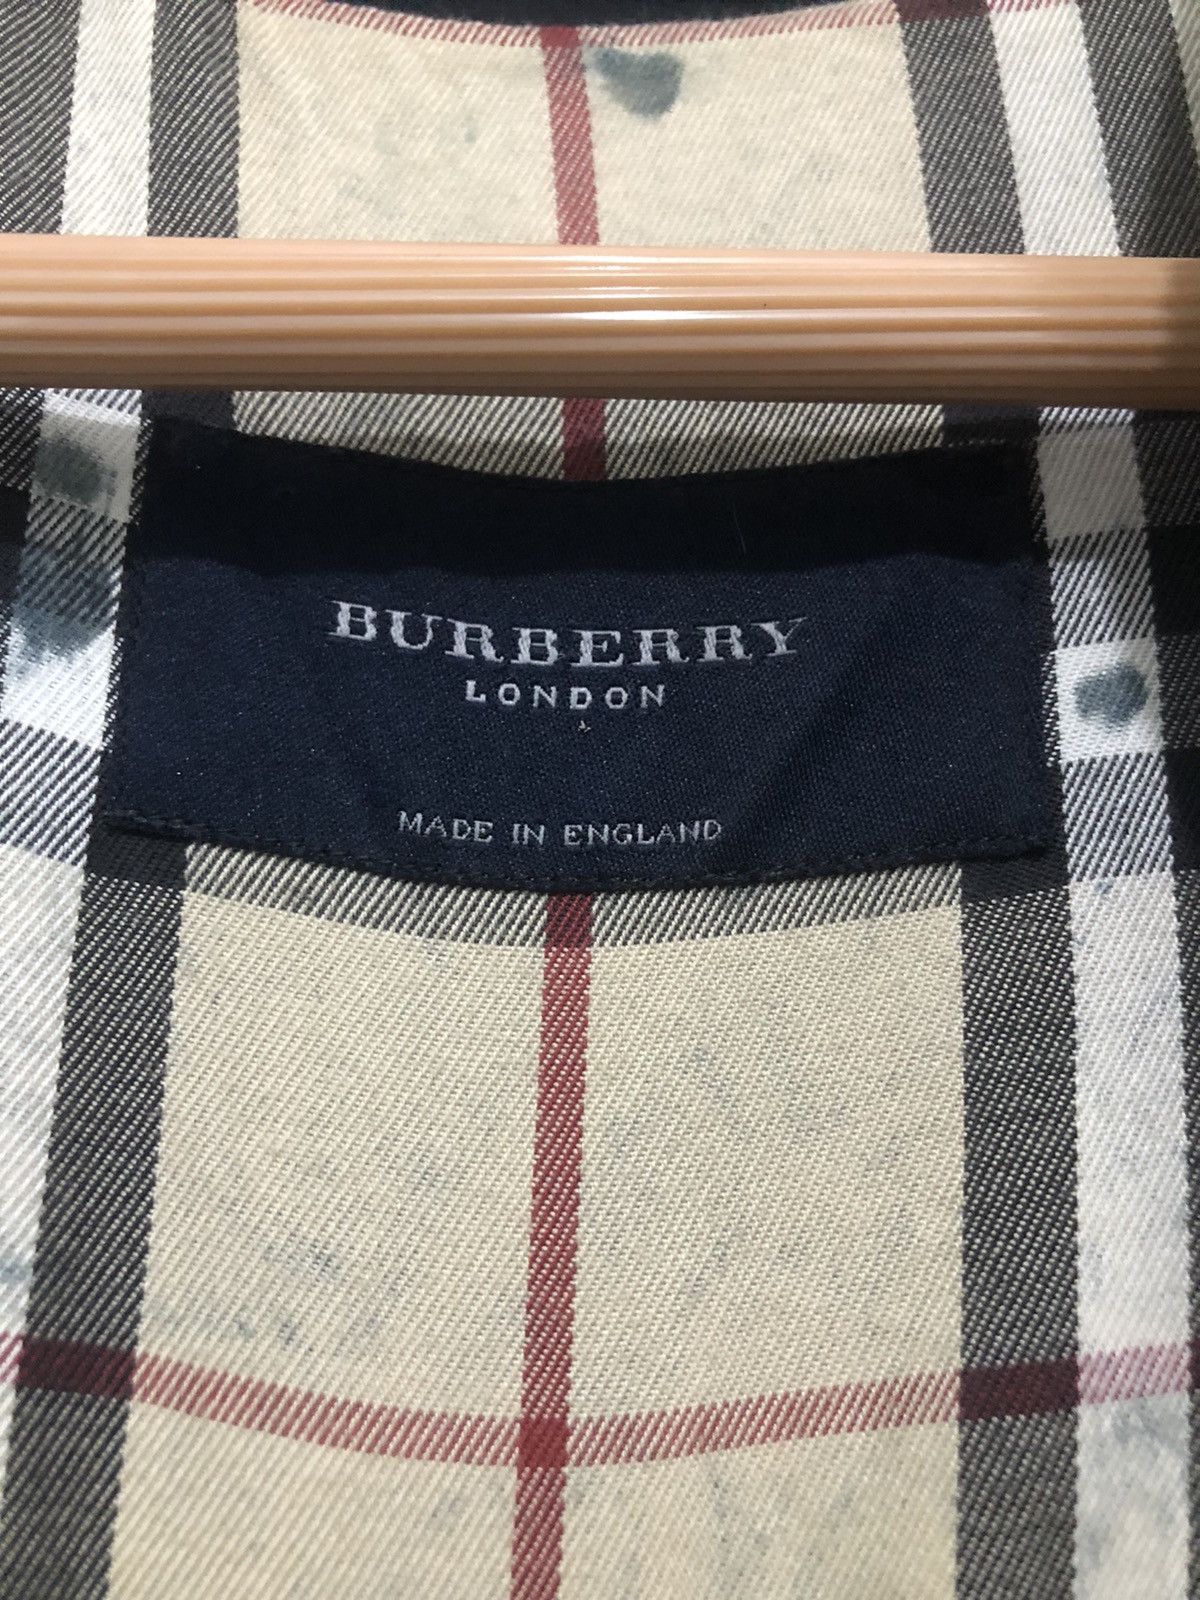 Burberry Prorsum - Made In England Burberry Nova Check Hoodie Jacket - 8